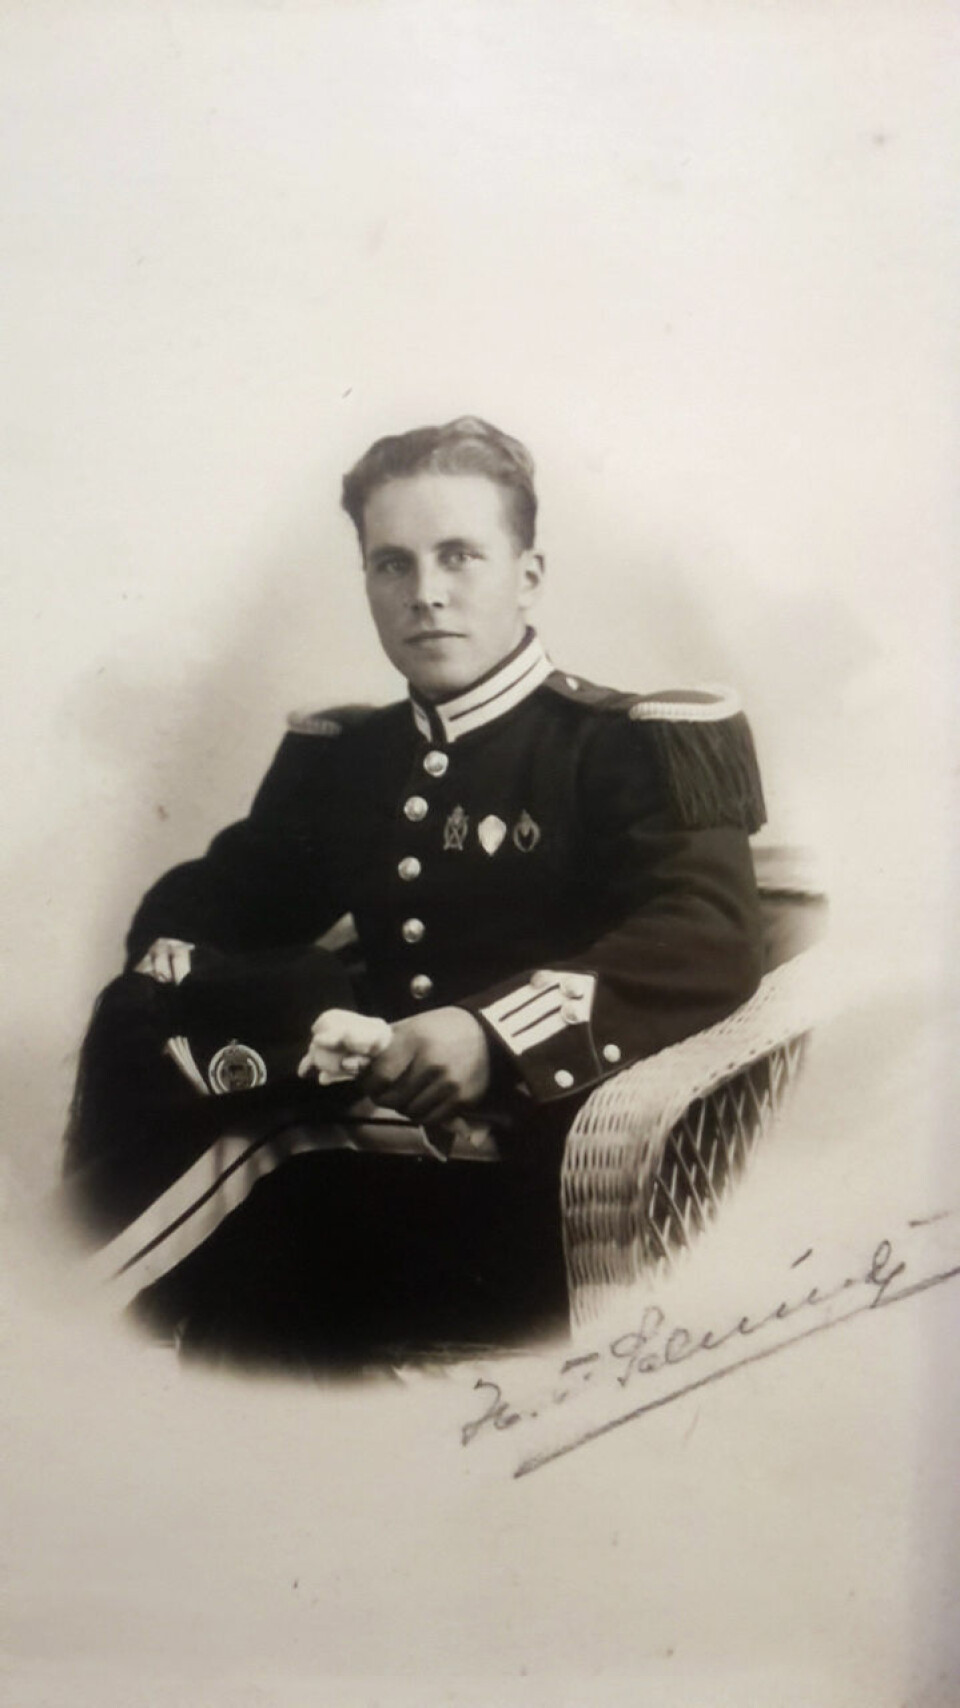 Gardeonkel: Eirik Veums mors onkel Erling Moe tjenestegjorde i 4. gardekompani (foto: privat).